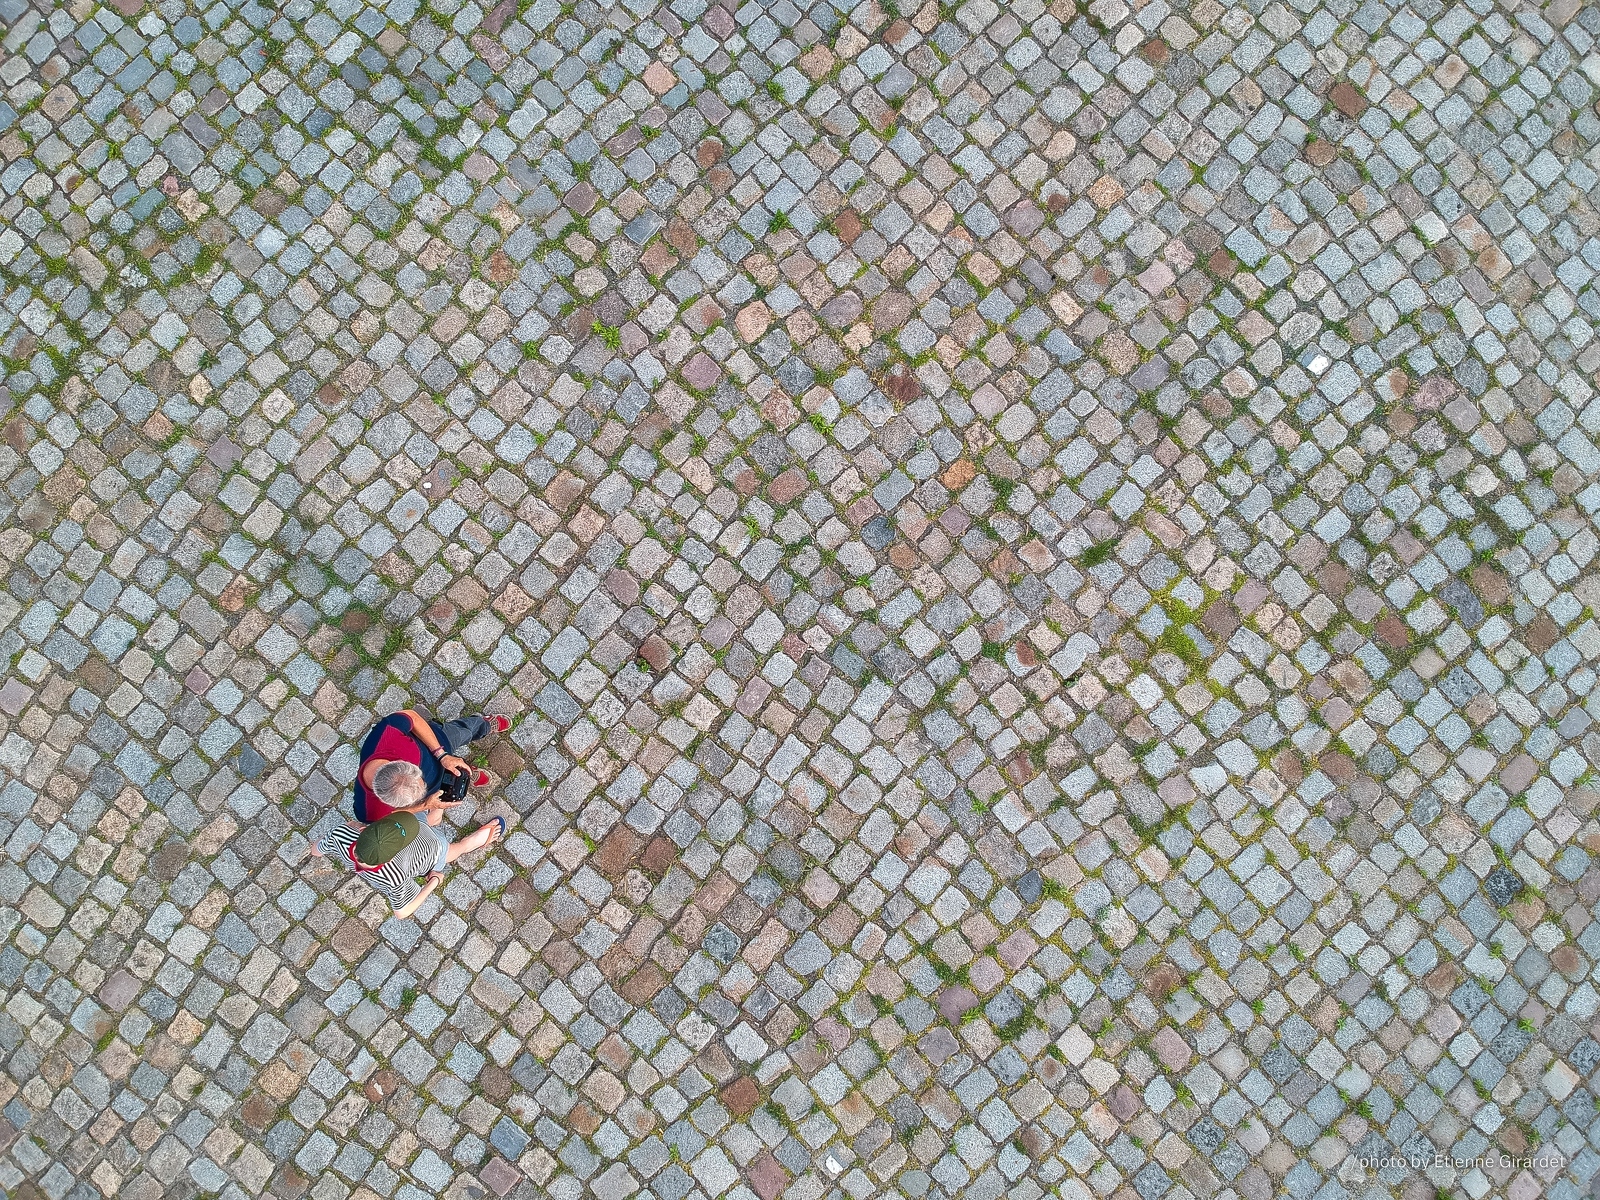 201906_15_DJI_0022-drone-people-street-background-by-E-Girardet.jpg